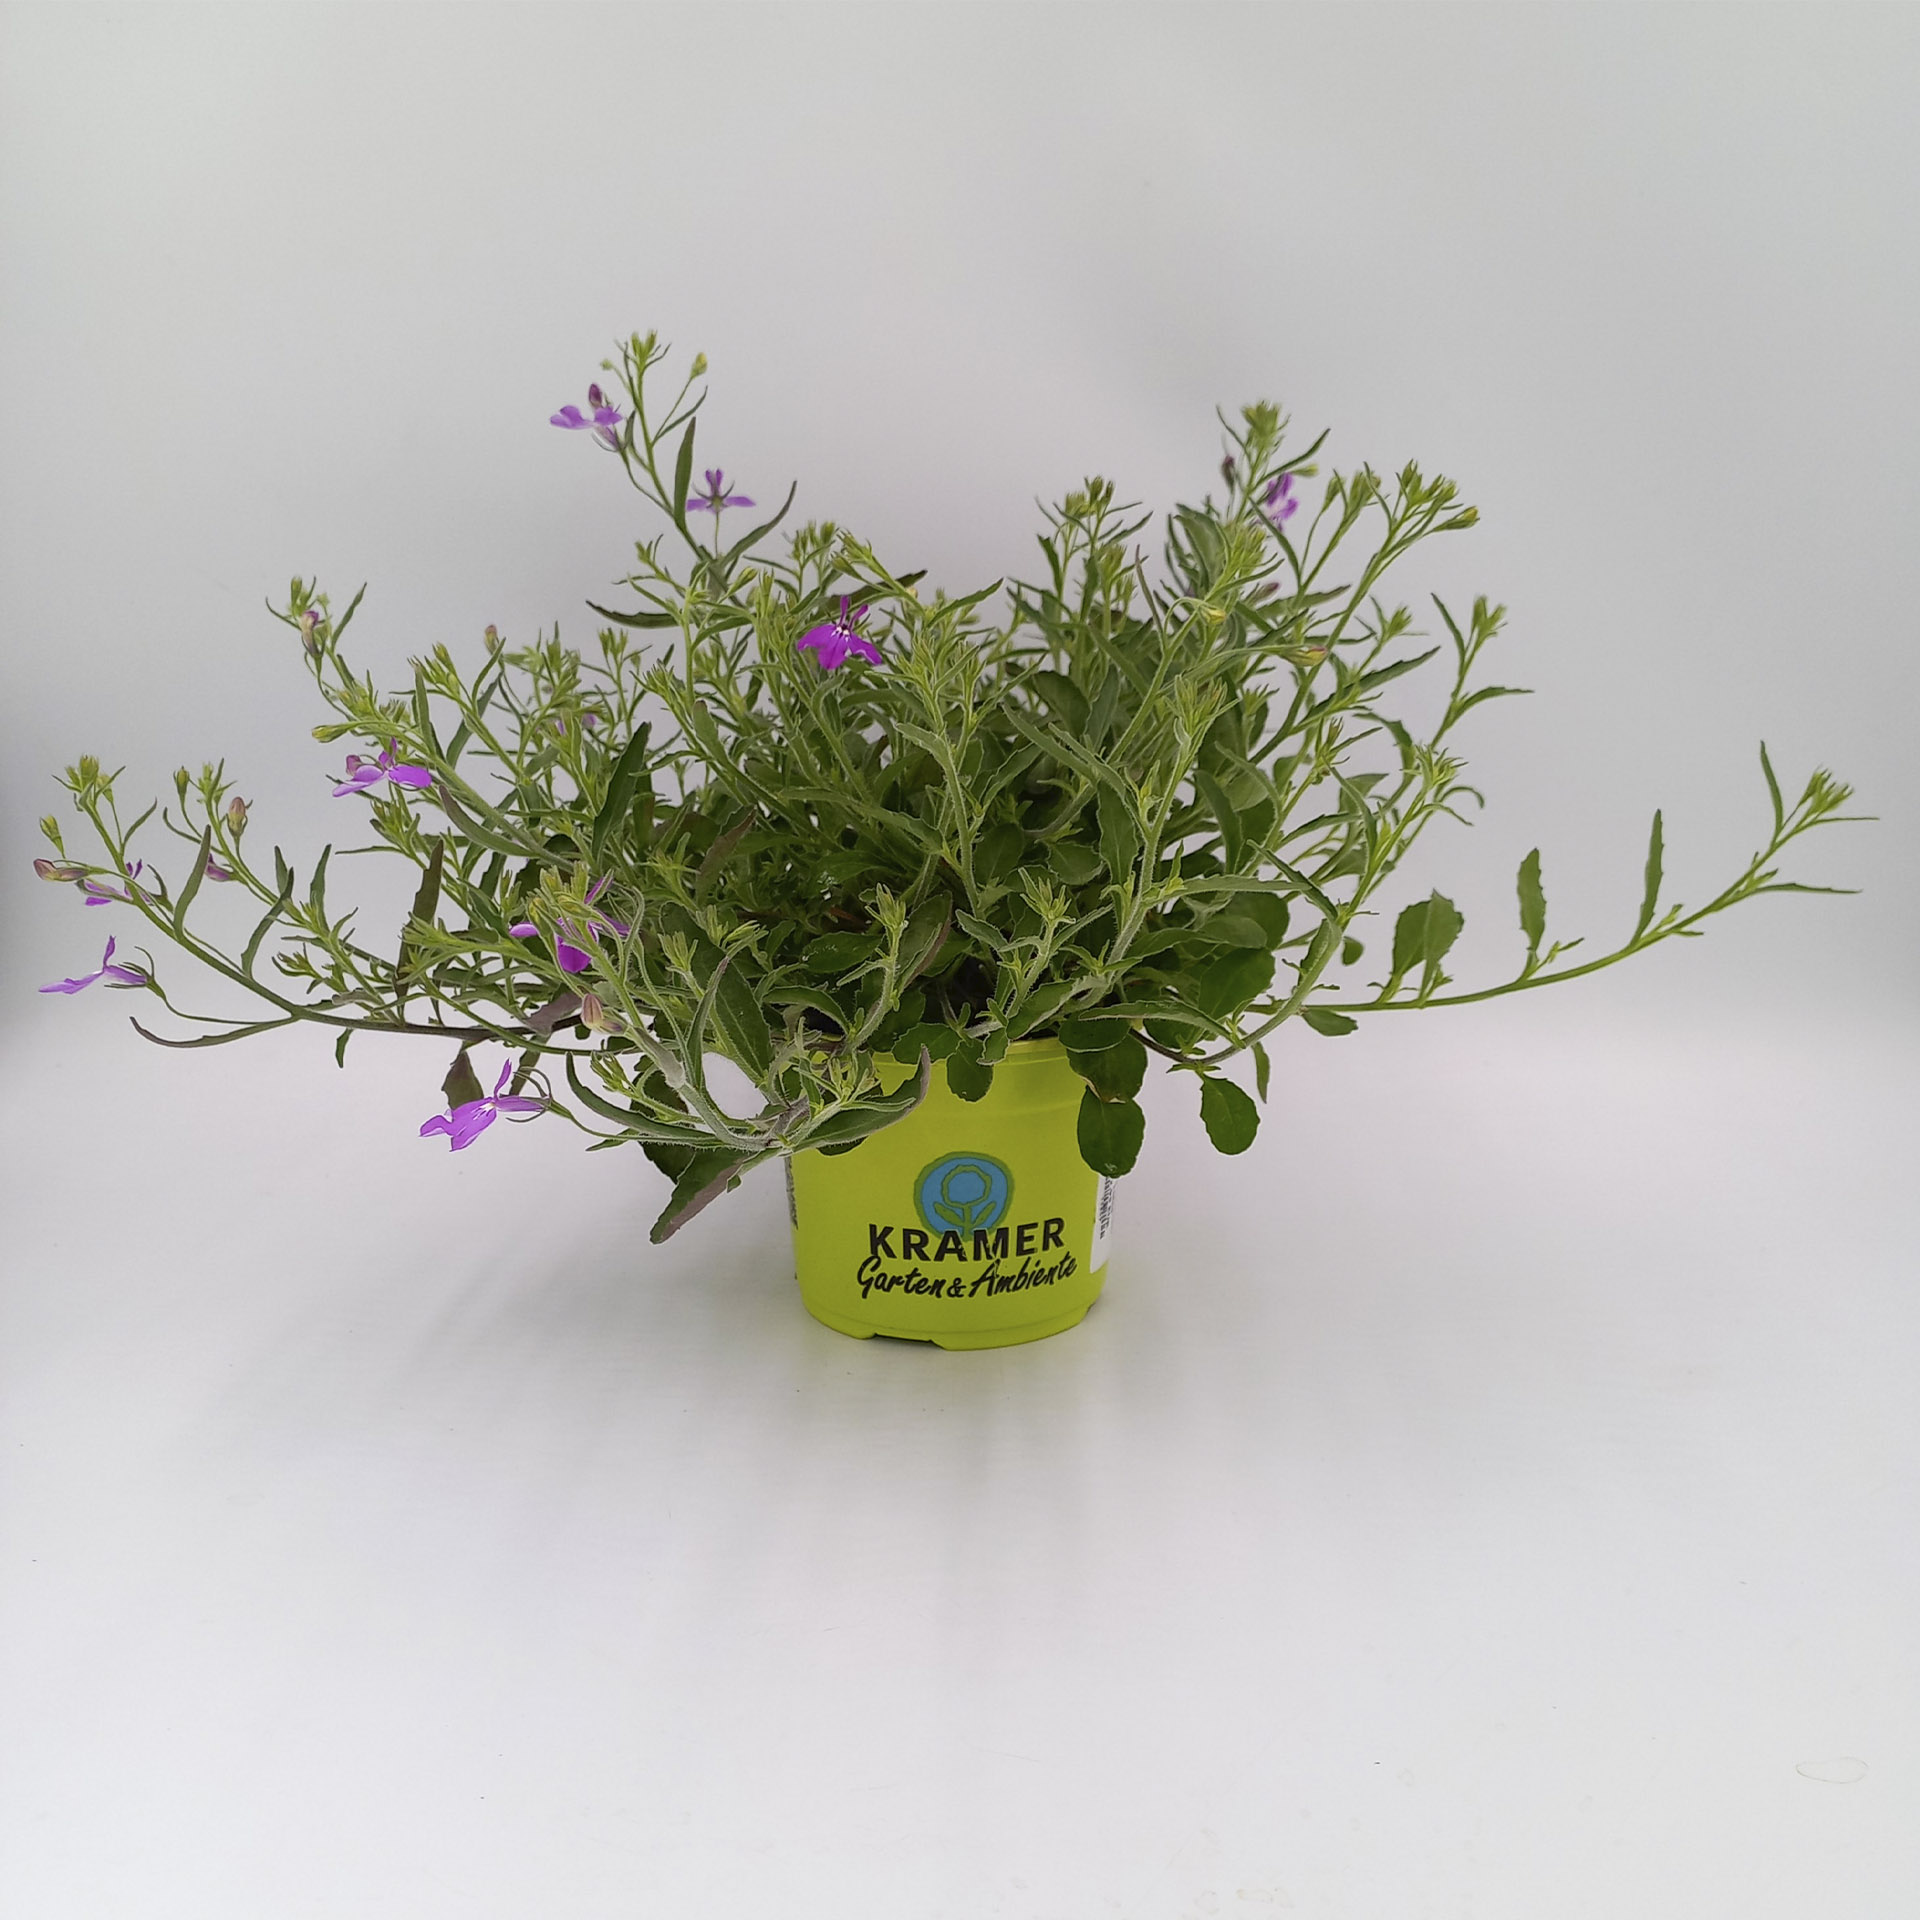 Männertreu / Lobelie Africo Lavender mit lavendelfarbenen Blüten im Pflanztopf